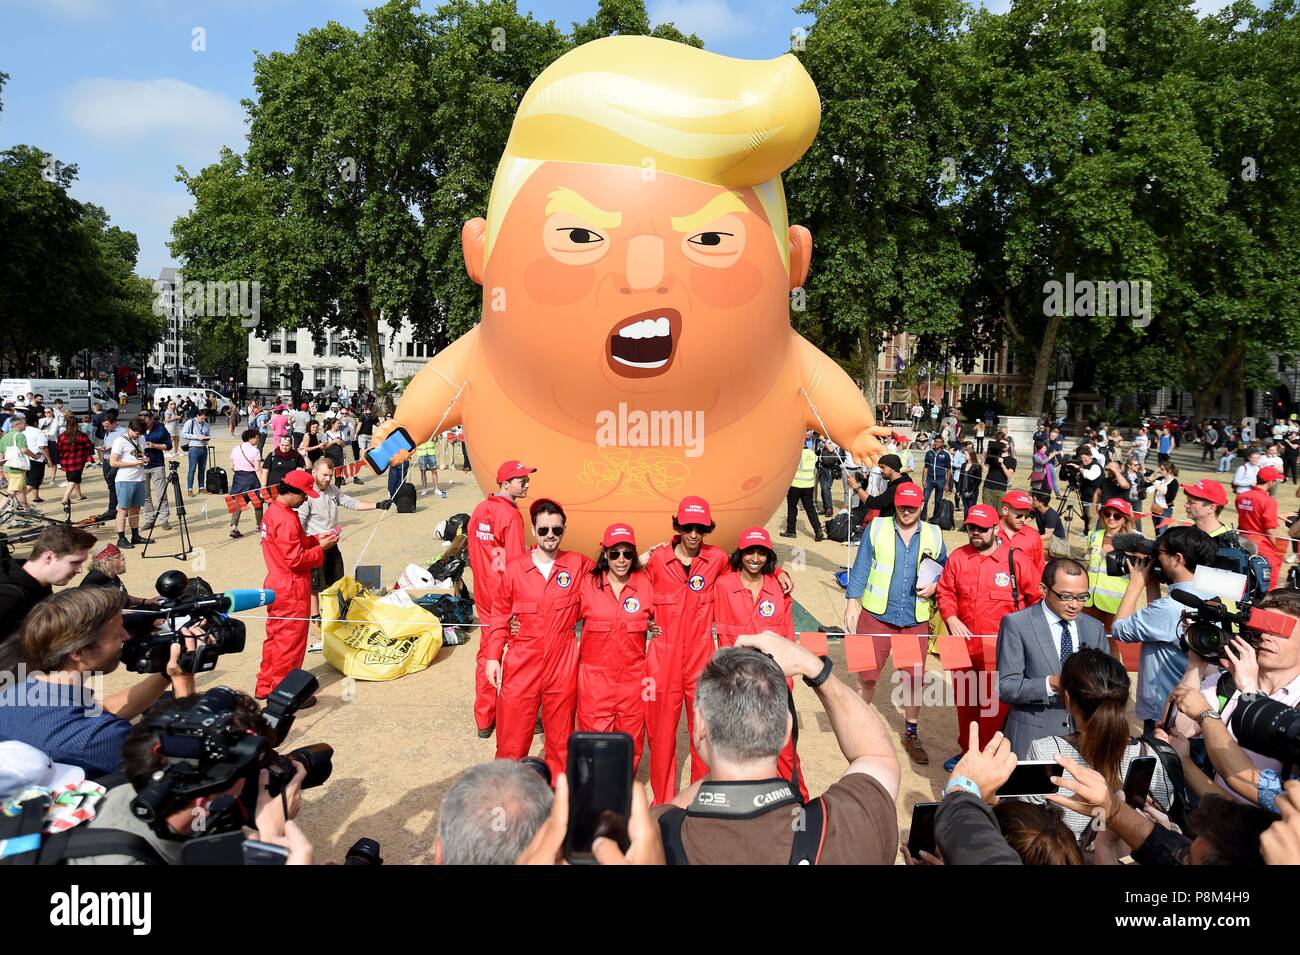 Un ballon de 6 mètres représentant en tant que Président américain Donald Trump, une commode à langer bébé orange vêtu sur la place du Parlement au cours de la visite du président. Finnbarr Crédit : Webster/Alamy Live News Banque D'Images